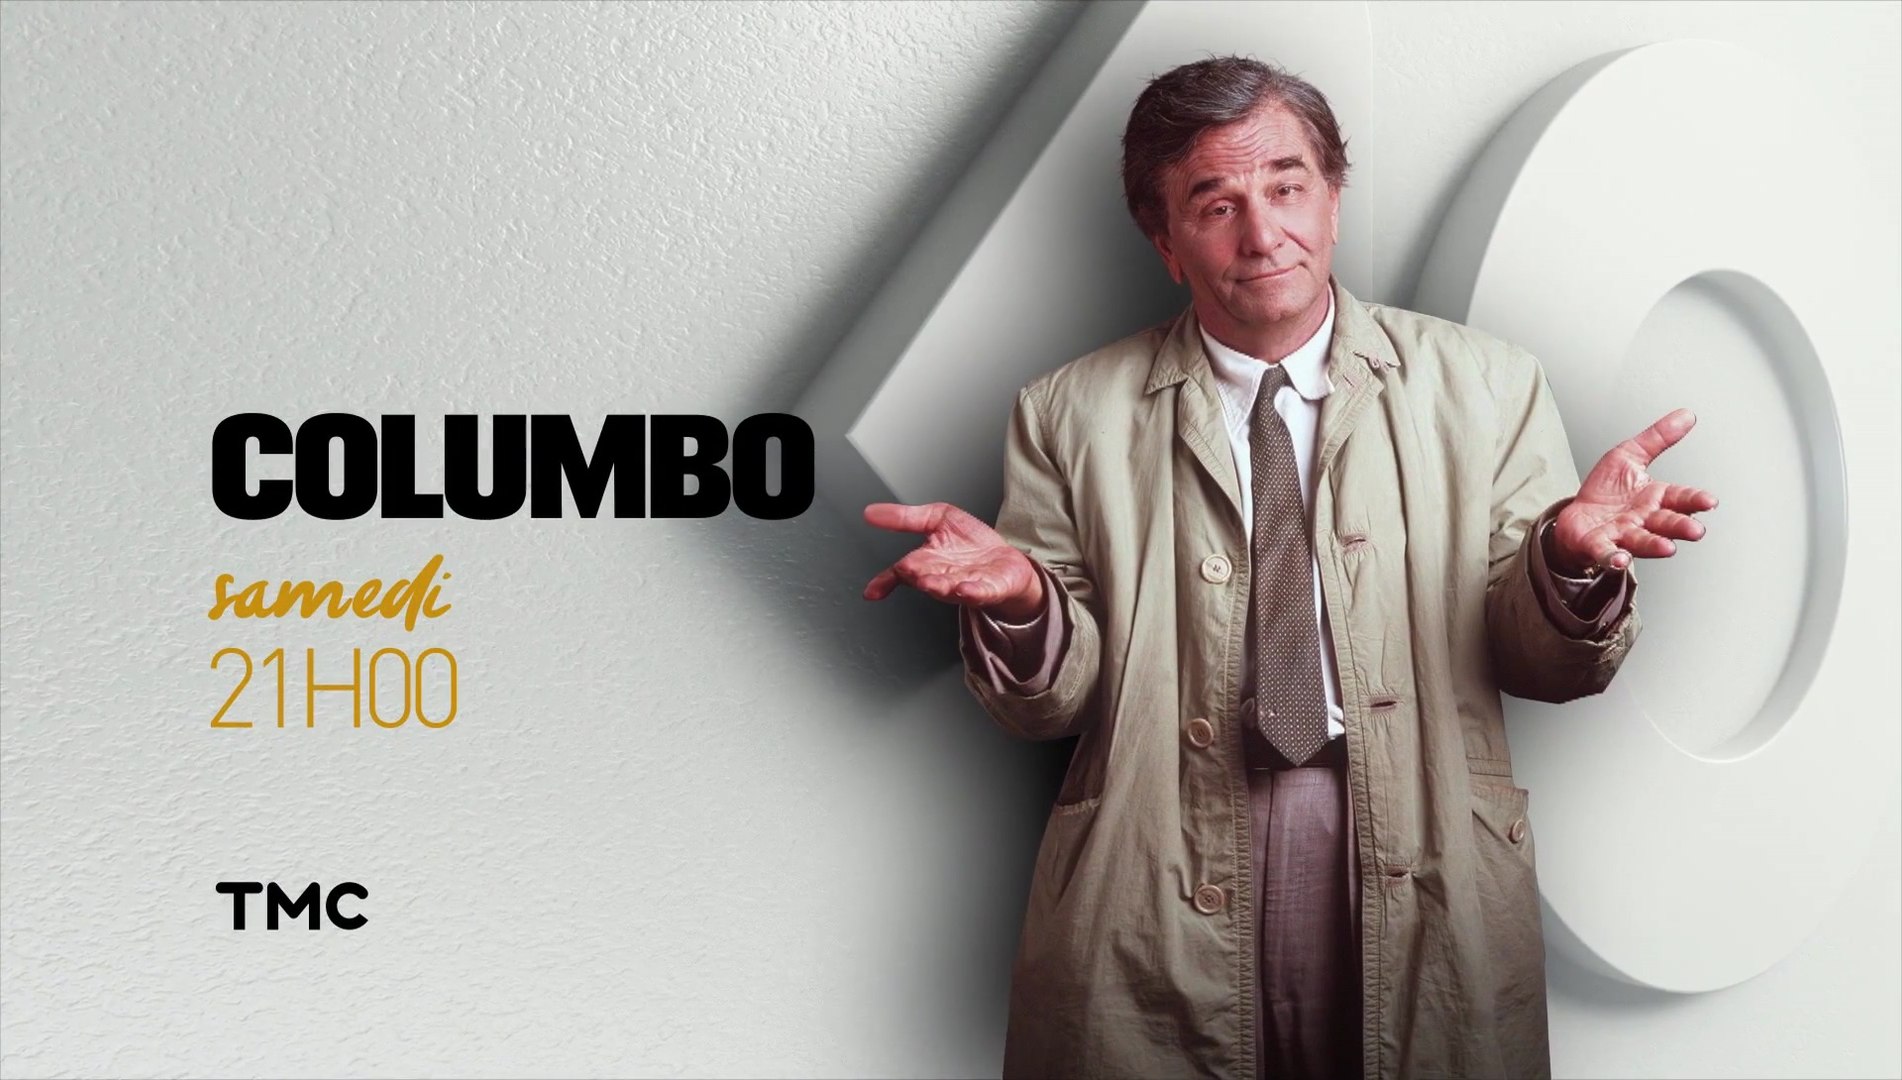 Columbo - Ombres et lumières - 20/05/17 - Vidéo Dailymotion